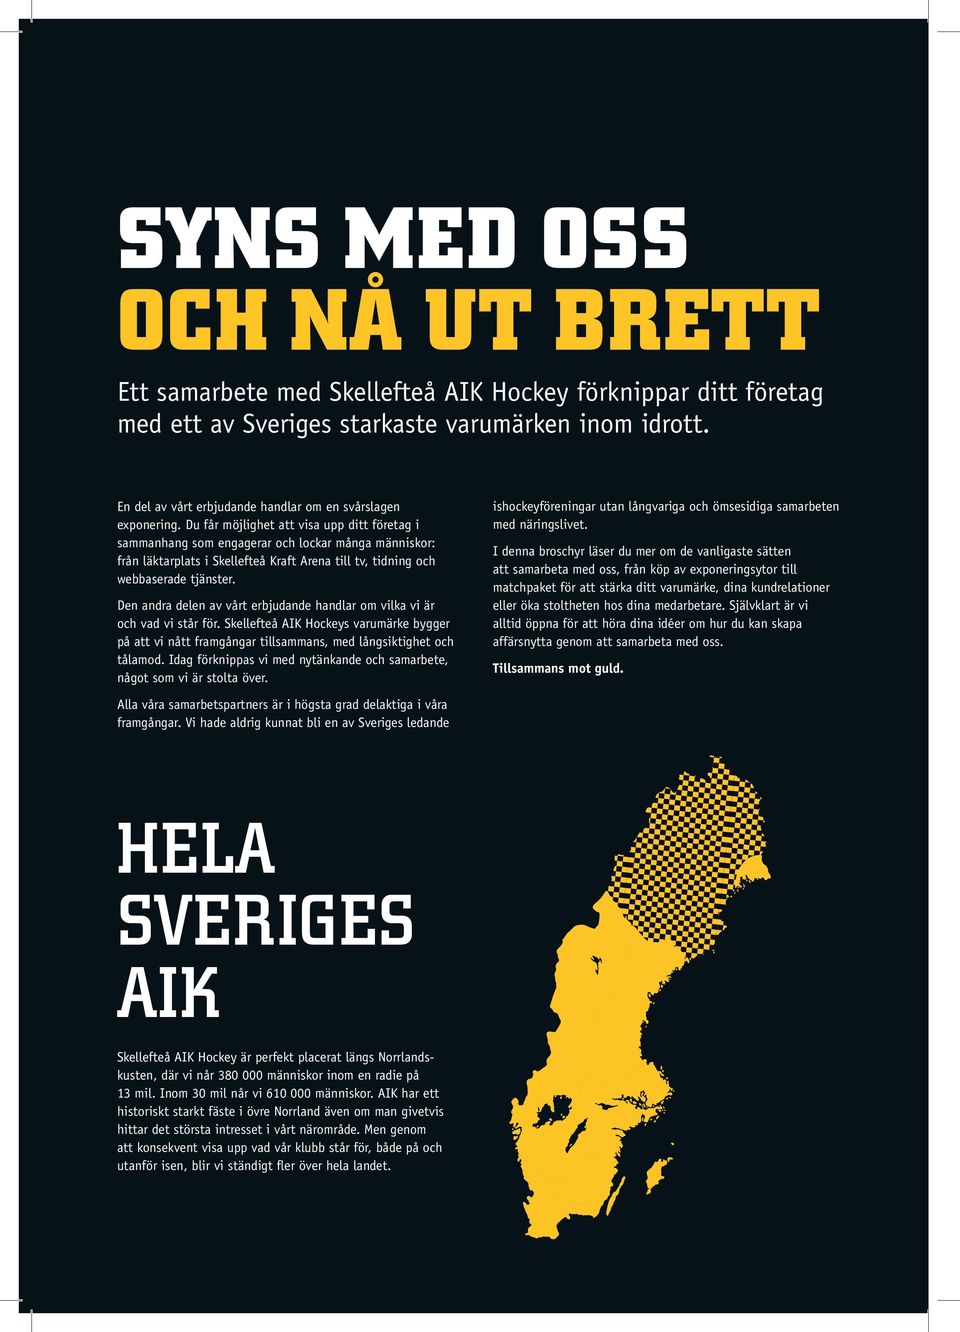 Du får möjlighet att visa upp ditt företag i sammanhang som engagerar och lockar många människor: från läktarplats i Skellefteå Kraft Arena till tv, tidning och webbaserade tjänster.